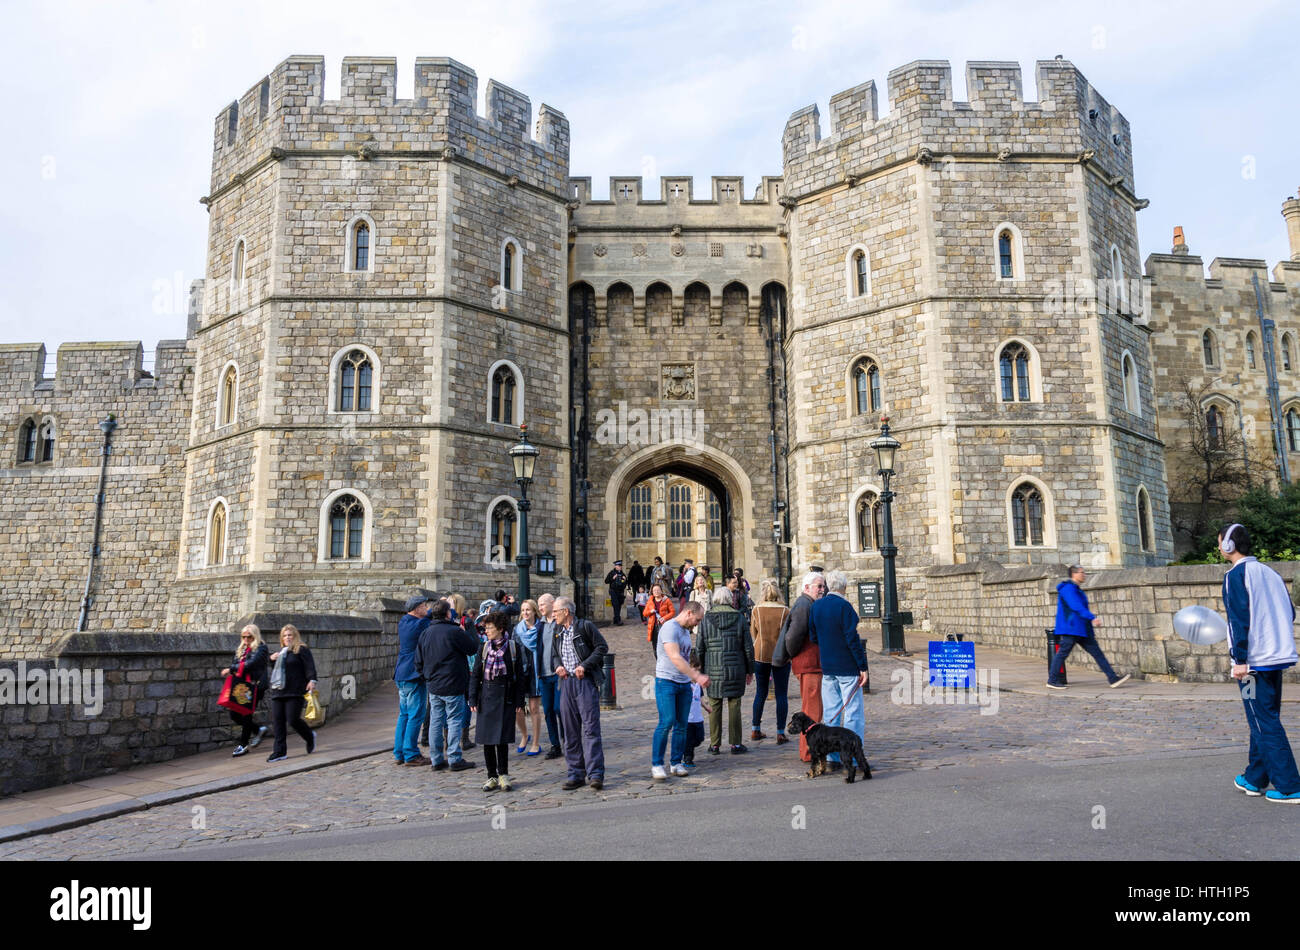 Una vista del Henry VIII Gateway, uno degli ingressi nel Castello di Windsor, un British Royal residence in Berkshire, Regno Unito. Foto Stock